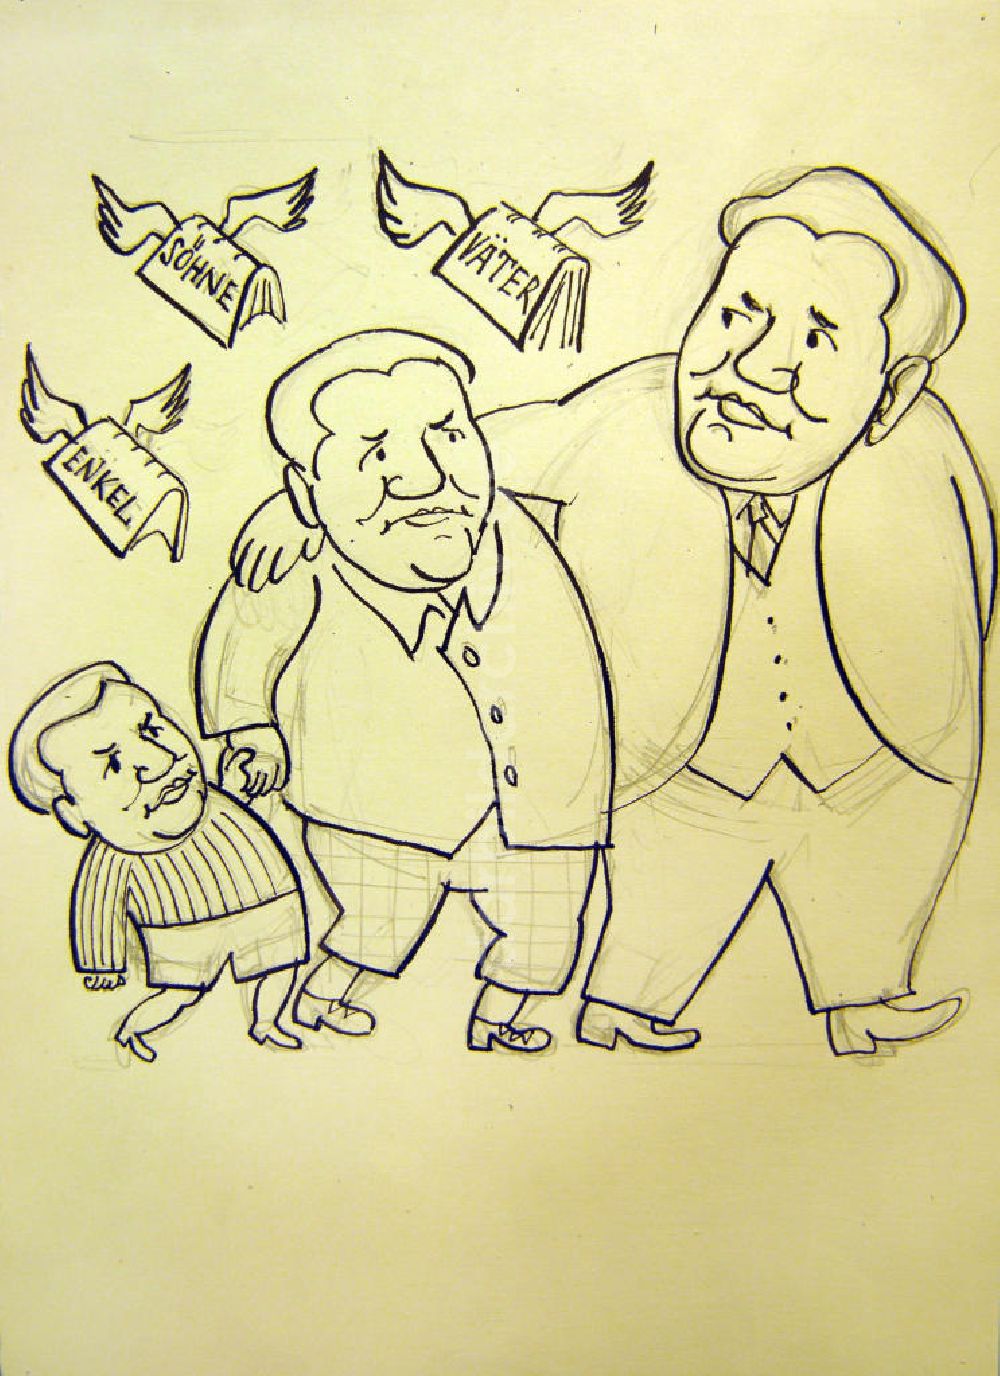 Berlin: Zeichnung von Herbert Sandberg Enkel, Söhne, Väter